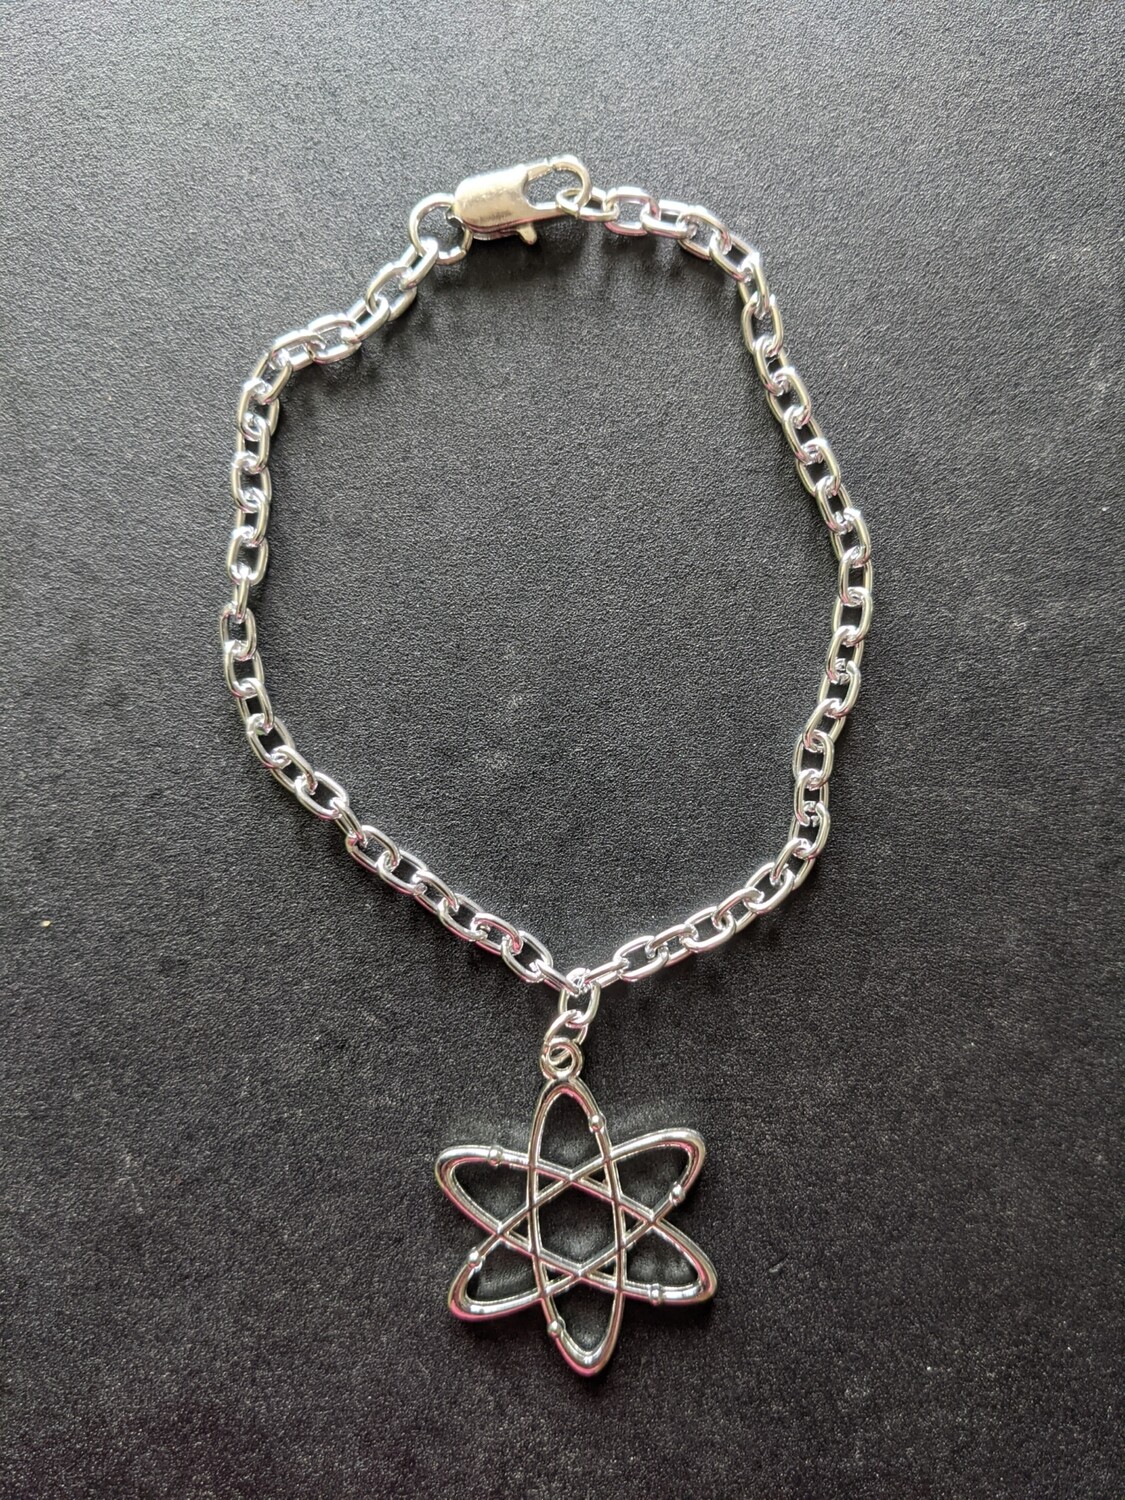 Atom bracelet